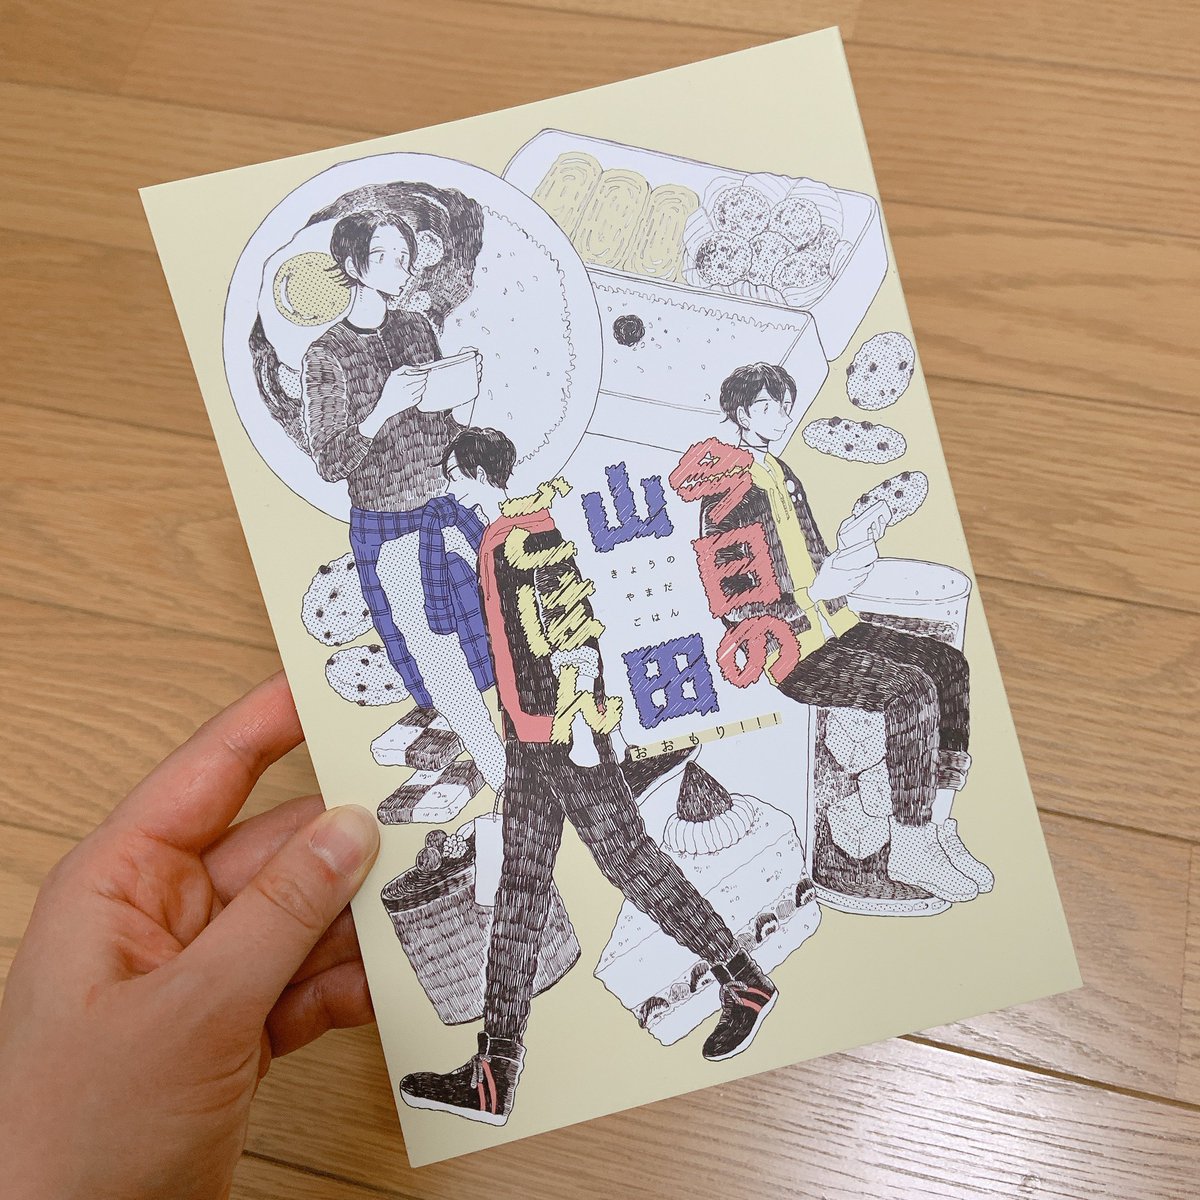 今日の山田ごはんおおもり‼︎!の見本誌が届きました…1年ぶりの自分の本だ…嬉しい〜?✨ 